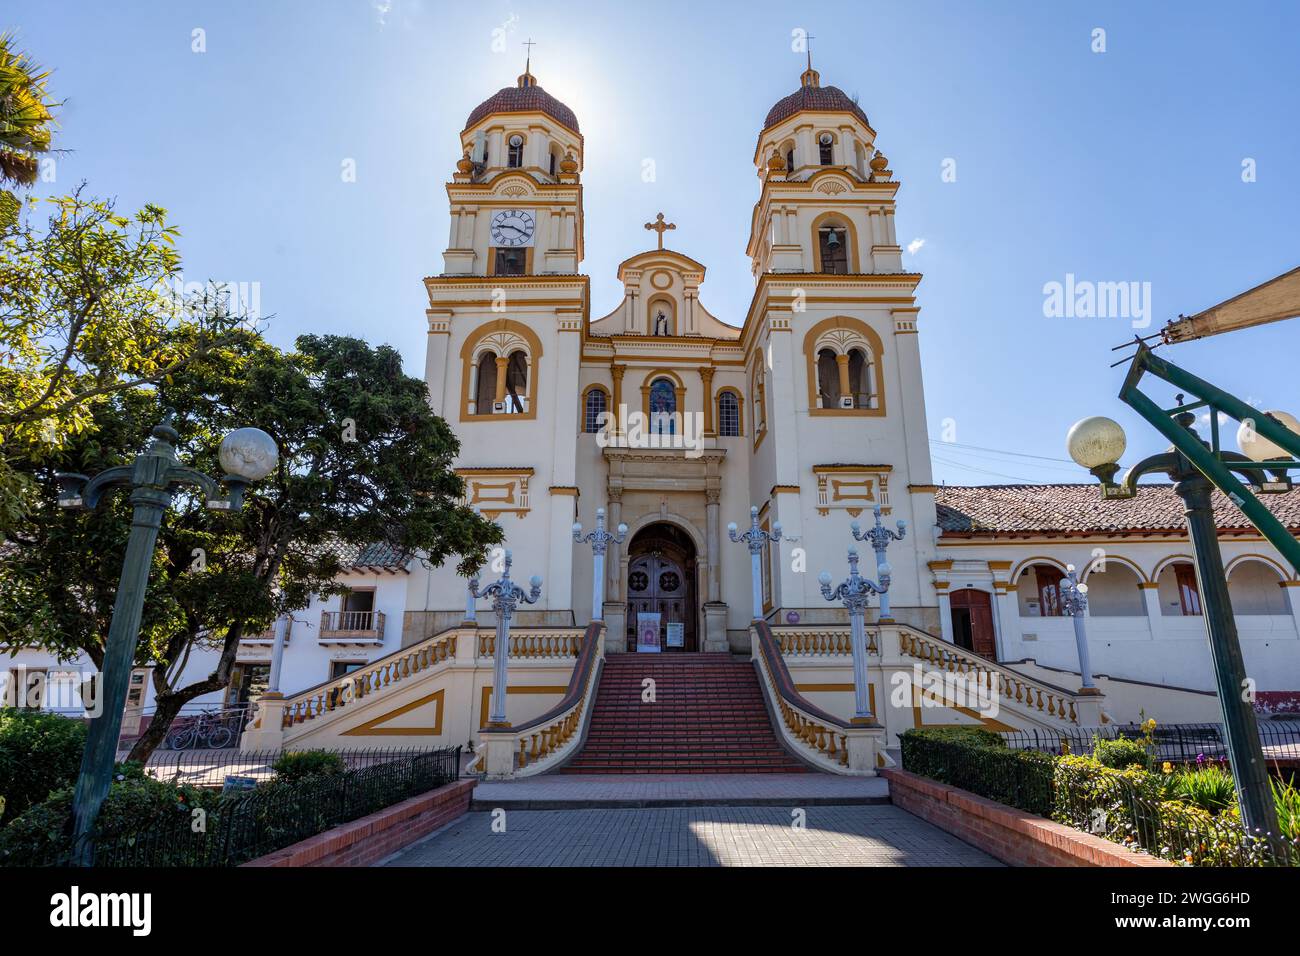 Belle église Iglesia de guascas dans la ville de Guasca, département de Cundinamarca, Colombie. Banque D'Images